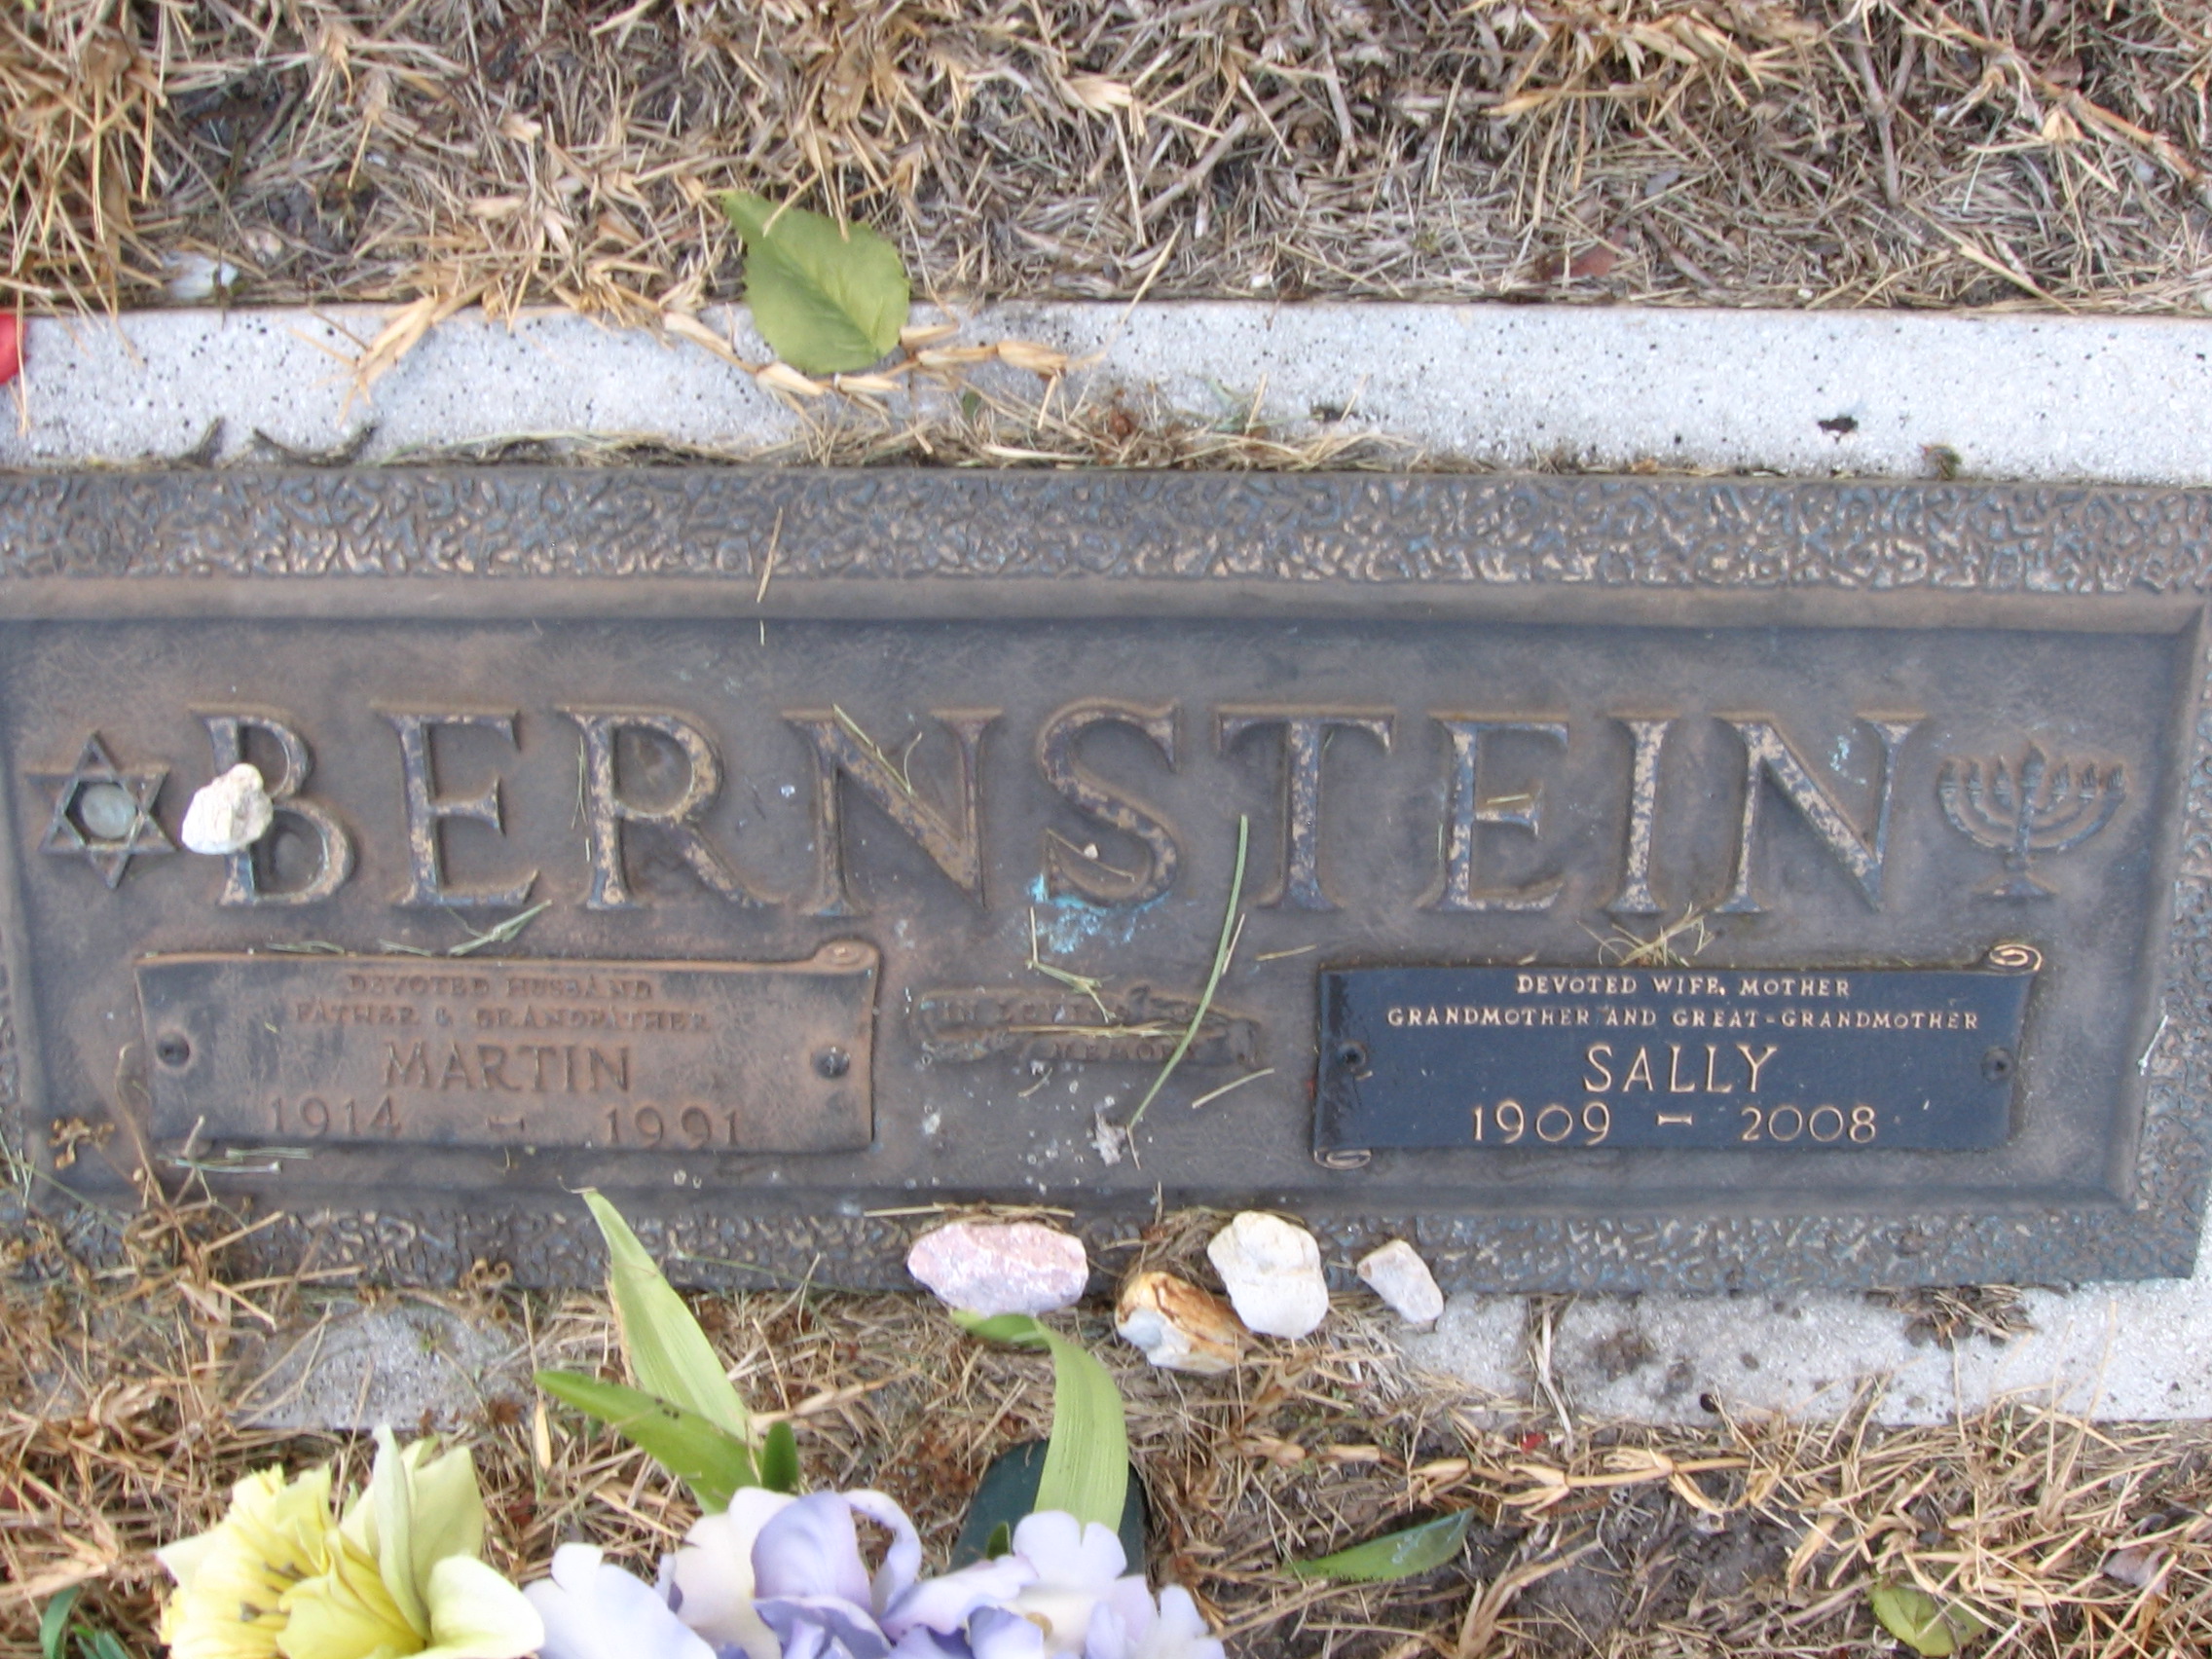 Martin Bernstein